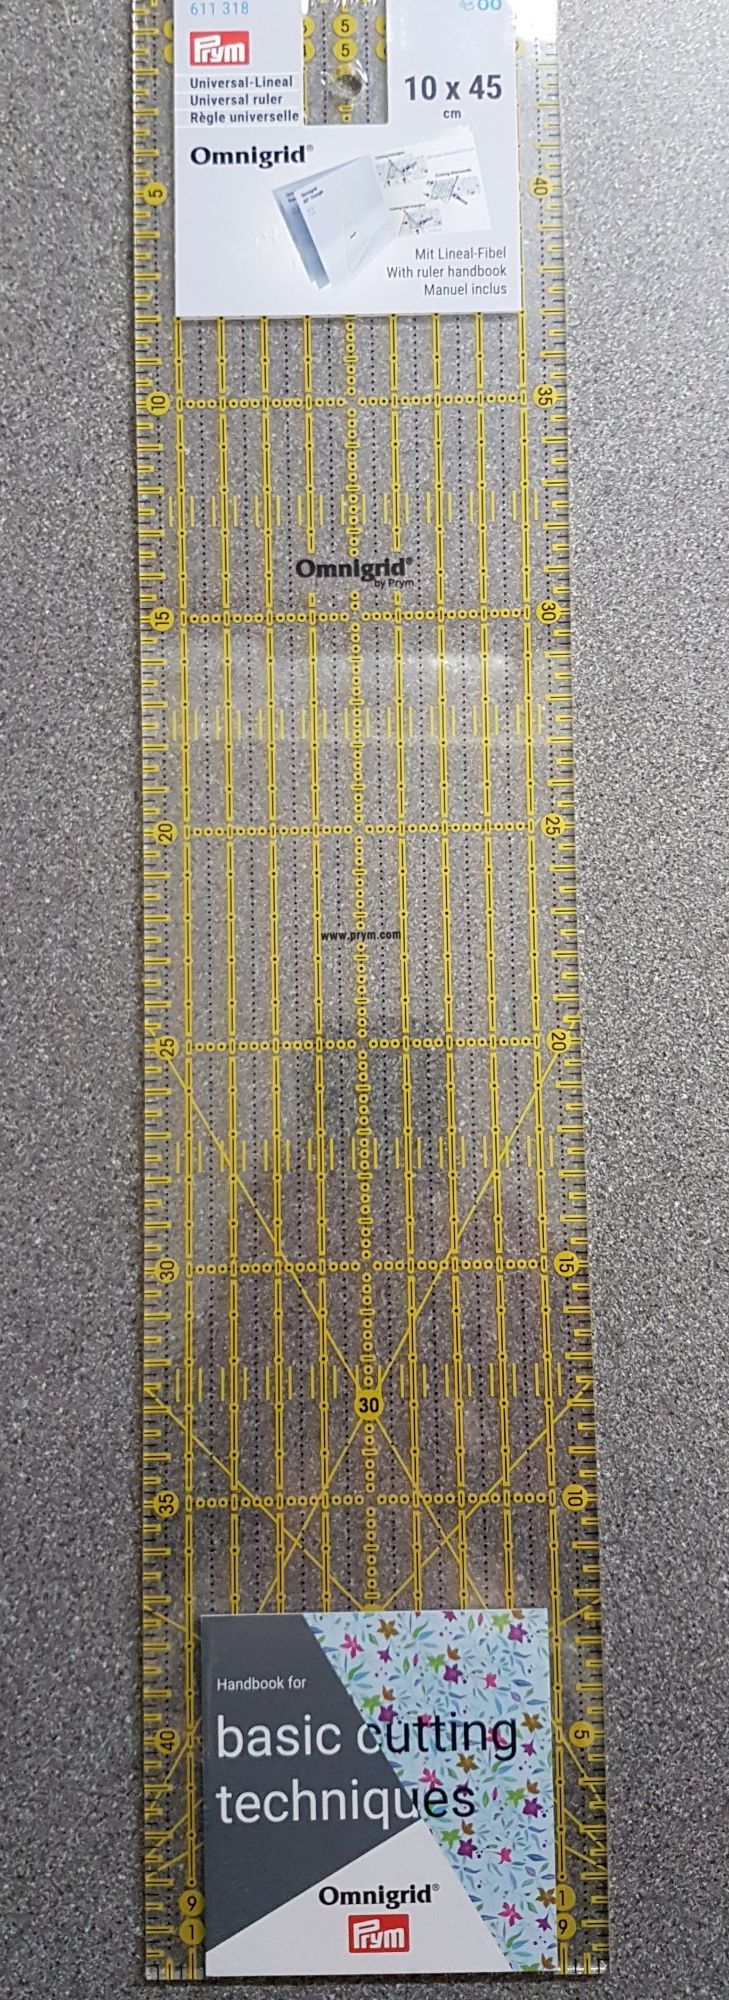 Prym 611-318 Omnigrid 10 x 45cm universal ruler